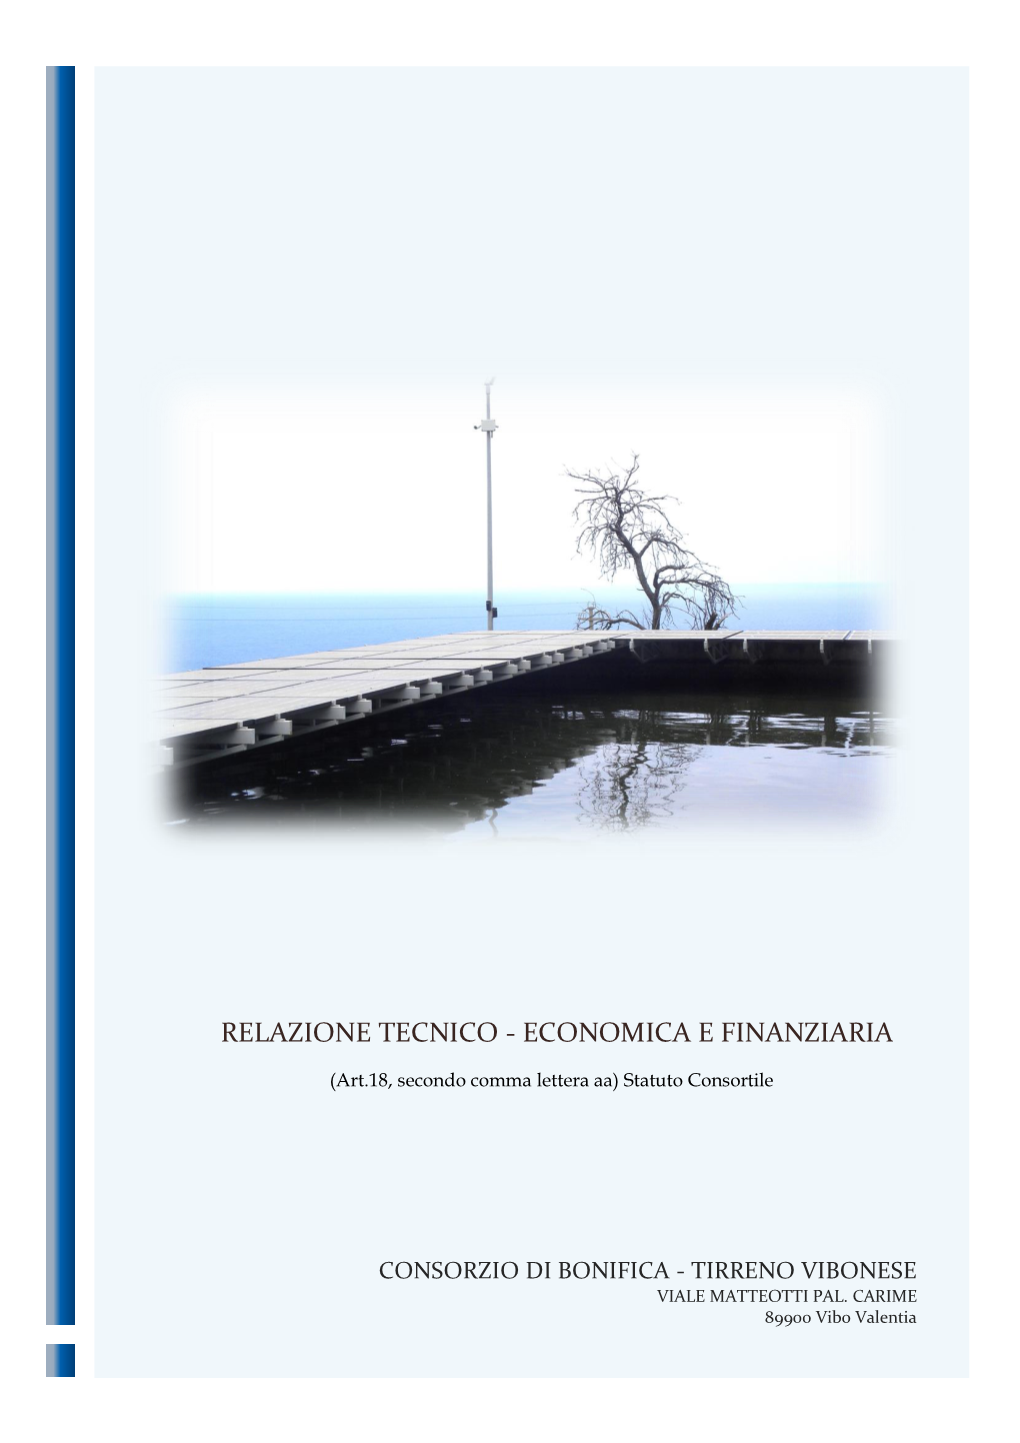 Relazione Tecnico - Economica E Finanziaria